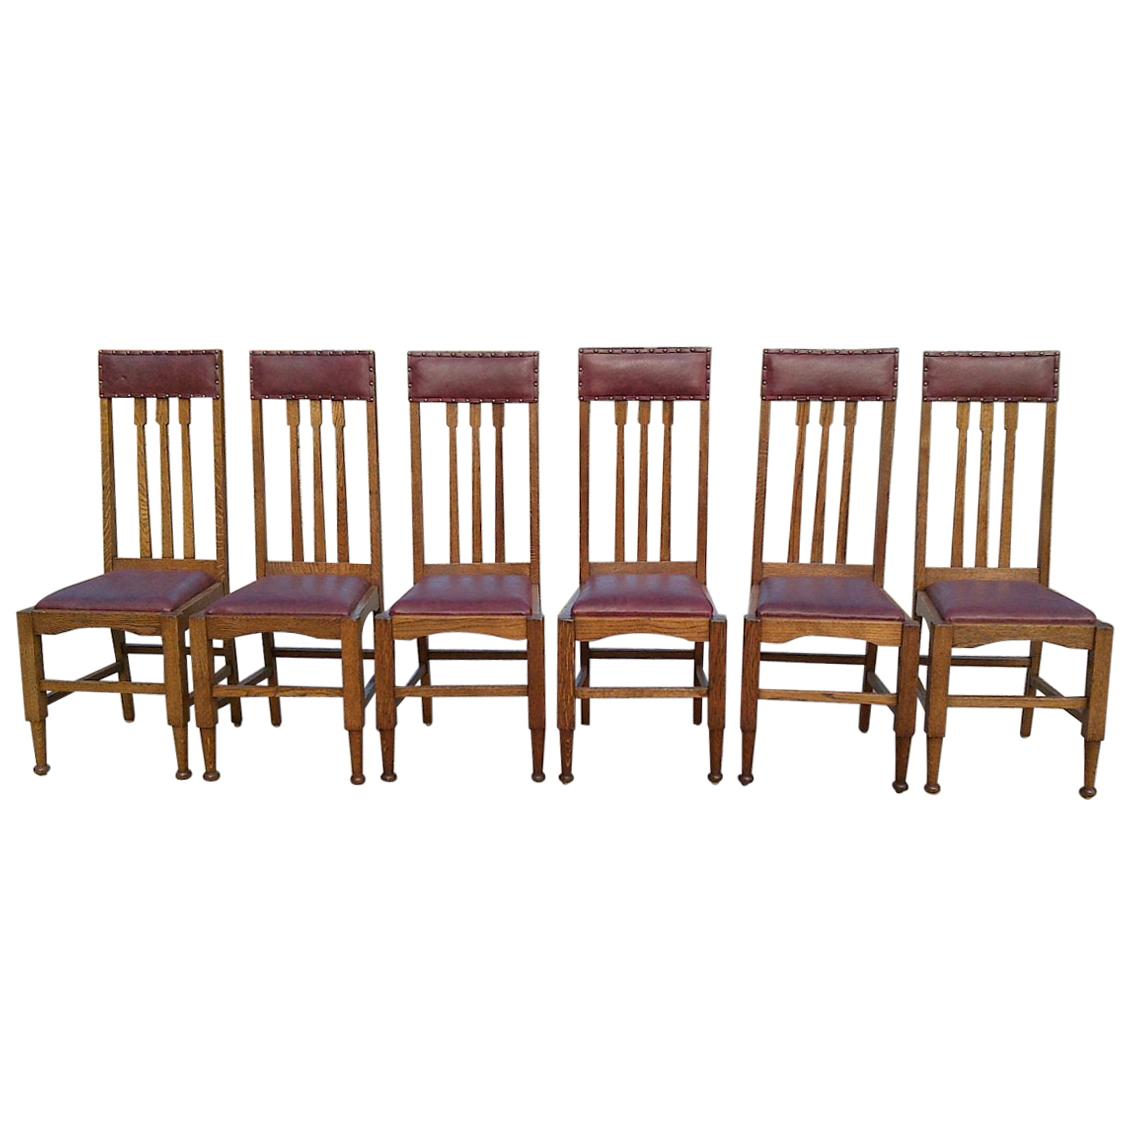 Huit chaises de salle à manger Arts & Crafts de style Glasgow en chêne à haut dossier avec sièges en cuir